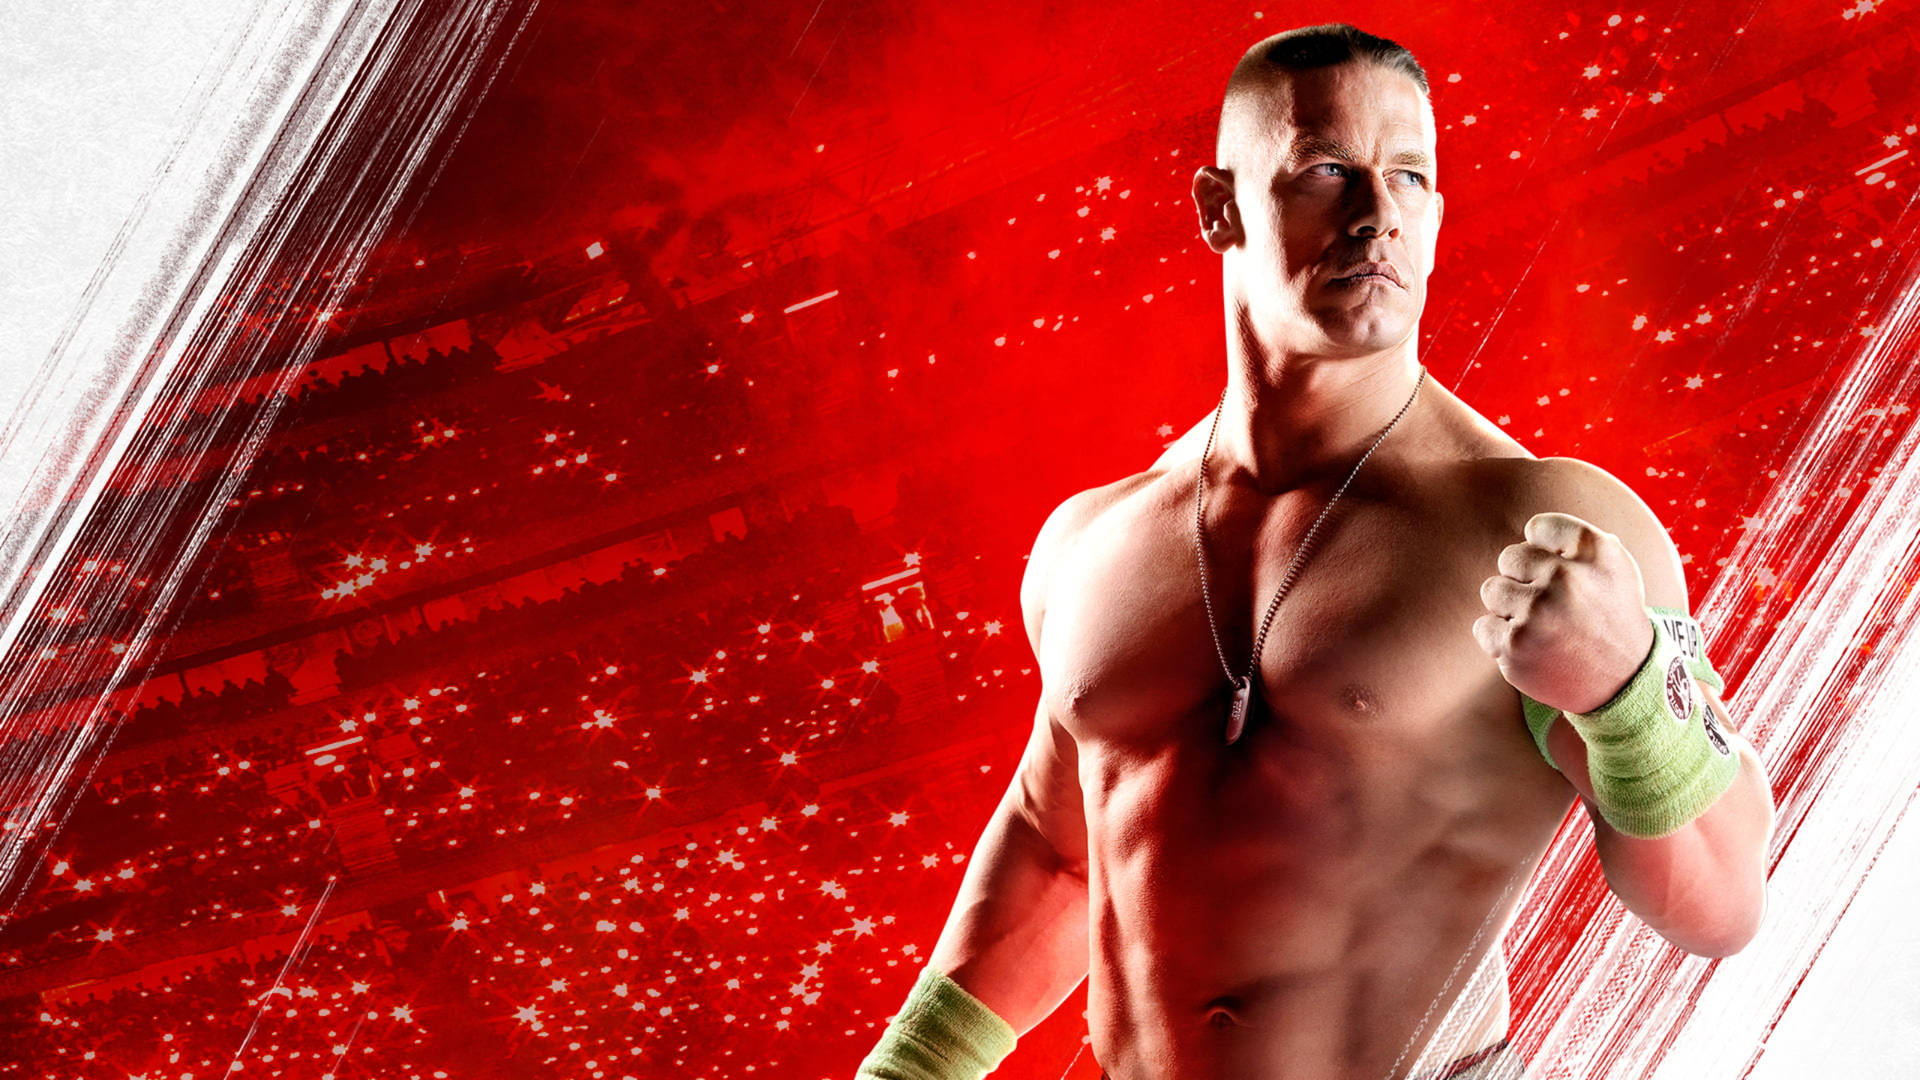 Wwe Wrestler John Cena Digital Cover